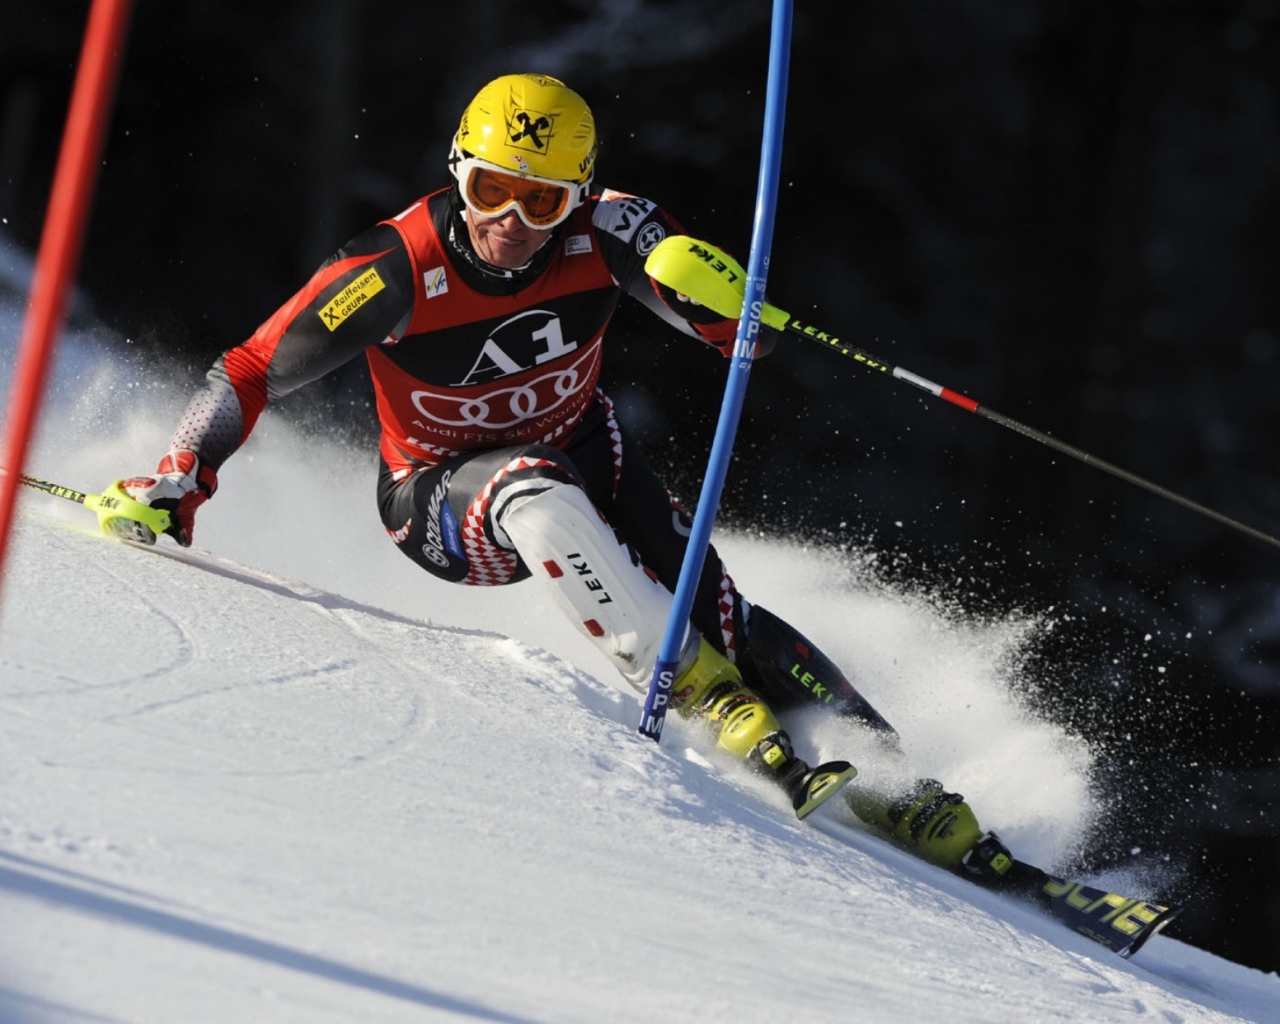 Croatian skier Ivica Kostelic winner of the silver medal in Sochi